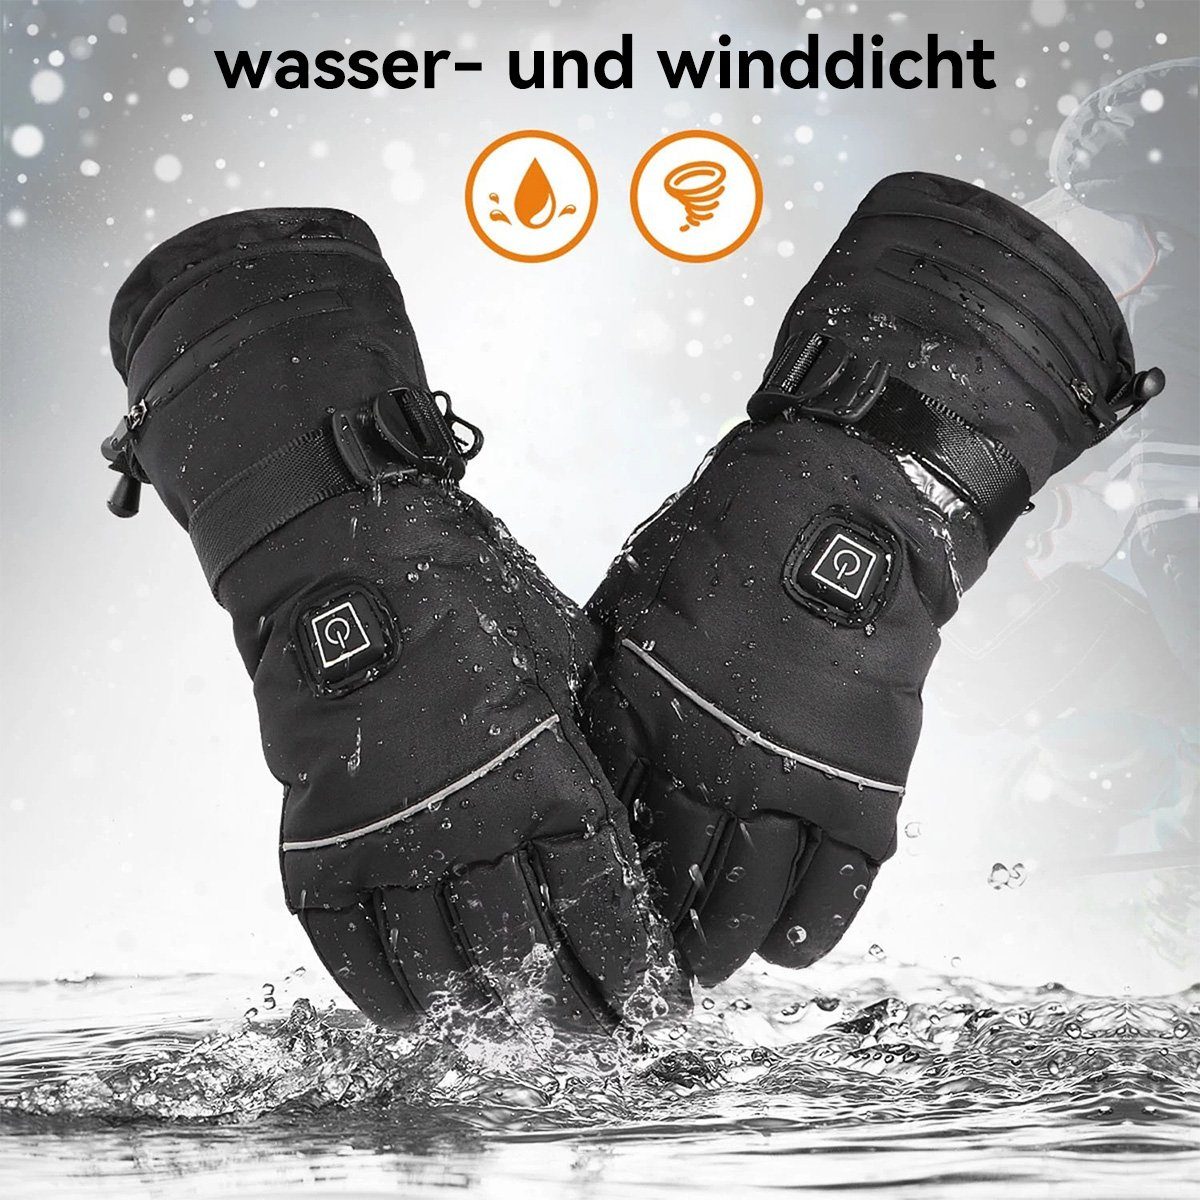 DOPWii Fahrradhandschuhe Beheizte Handschuhe,Wasserdicht,Winddicht,3 stufige Temperaturregelung